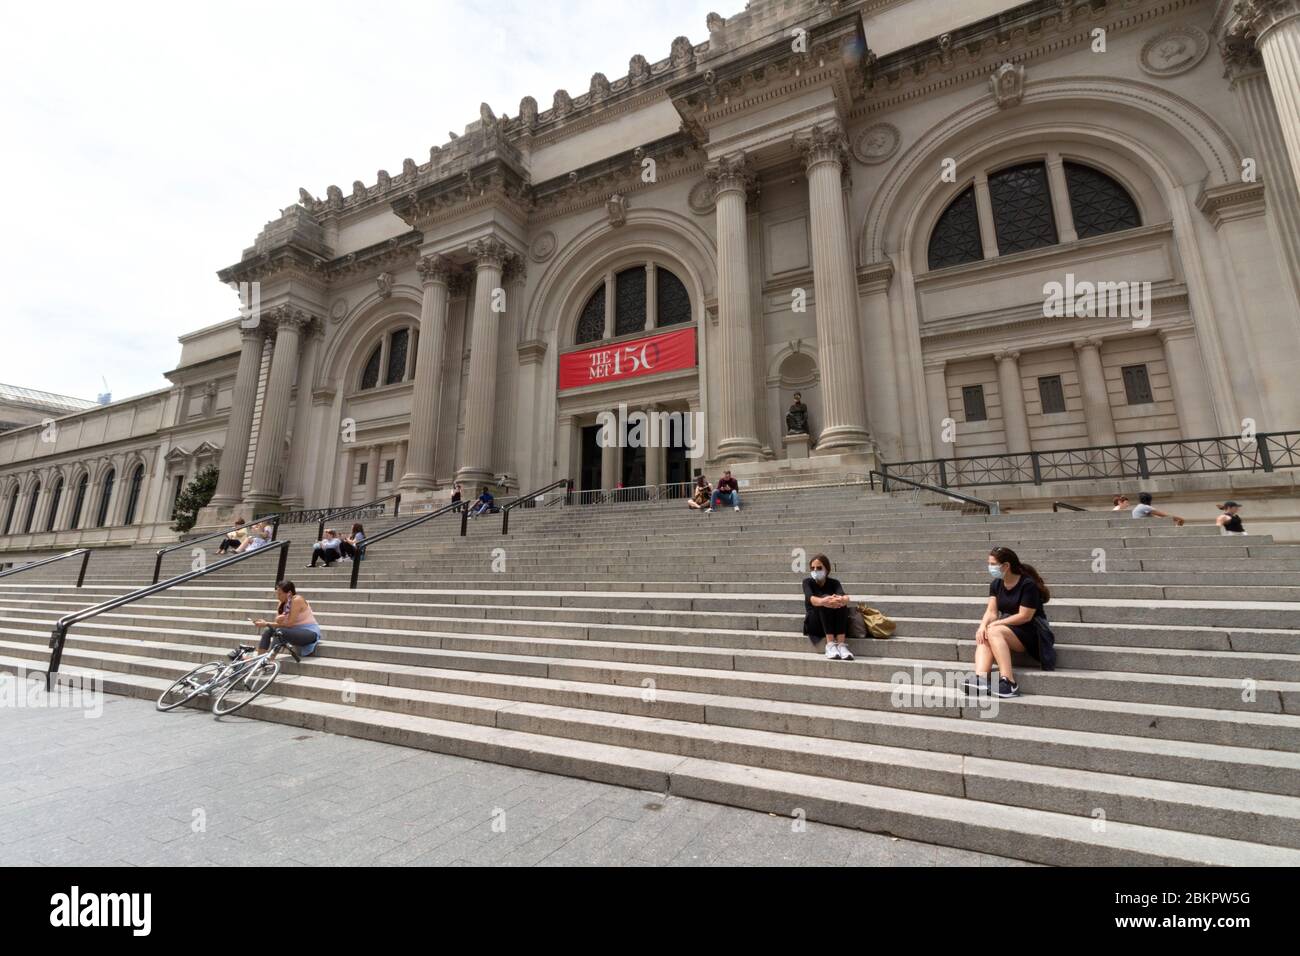 Les gens ont pris des distances sociales dans des masques sur les escaliers du Metropolitan Museum of Art, un week-end pendant la pandémie du coronavirus ou du covid-19 Banque D'Images